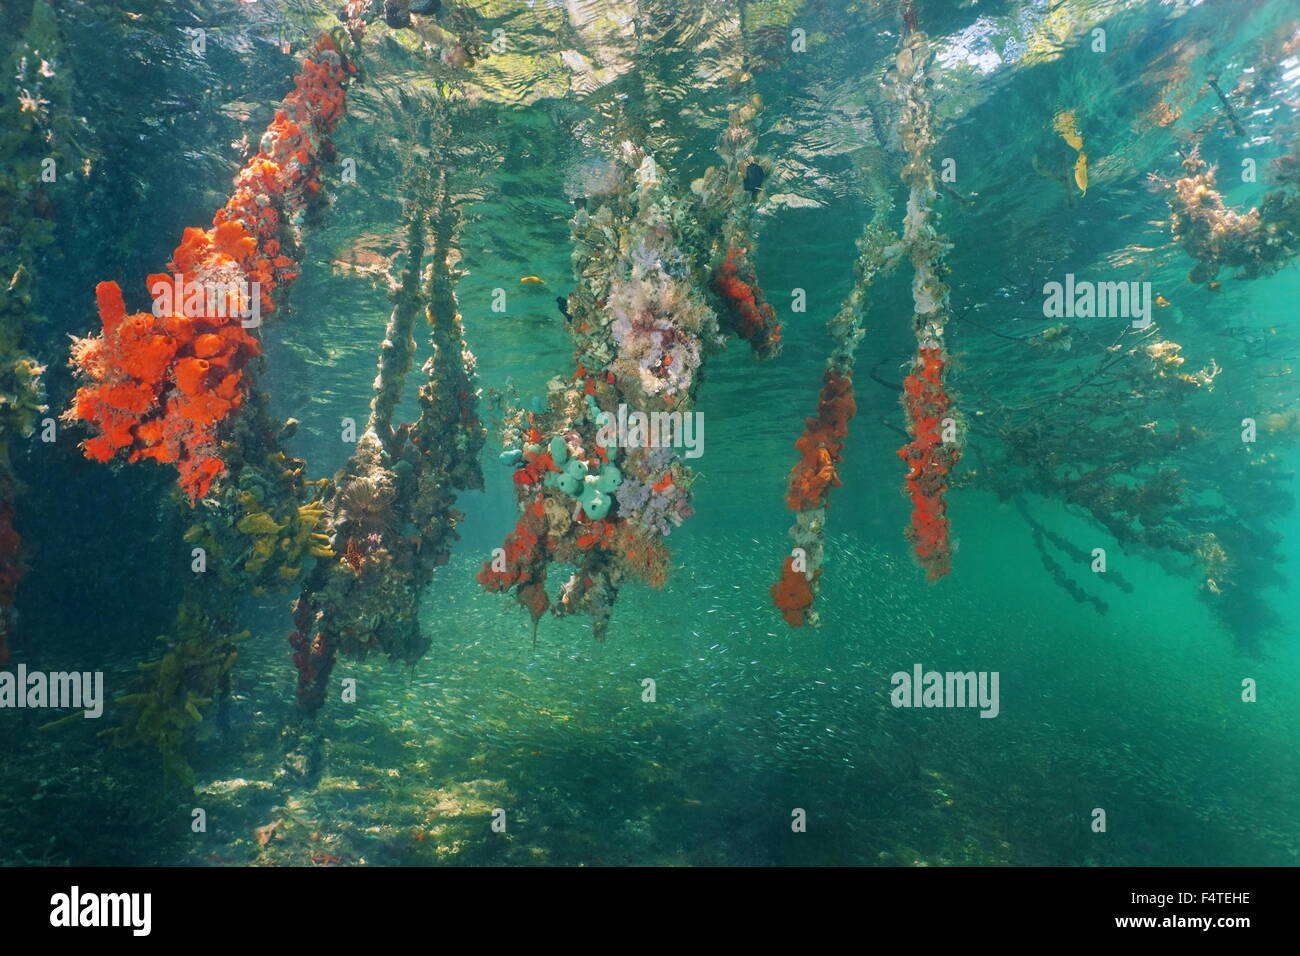 Sous l'eau dans la mangrove avec les racines des arbres couverts par la mer, la vie colorée de la mer des Caraïbes, Panama, Amérique Centrale Banque D'Images